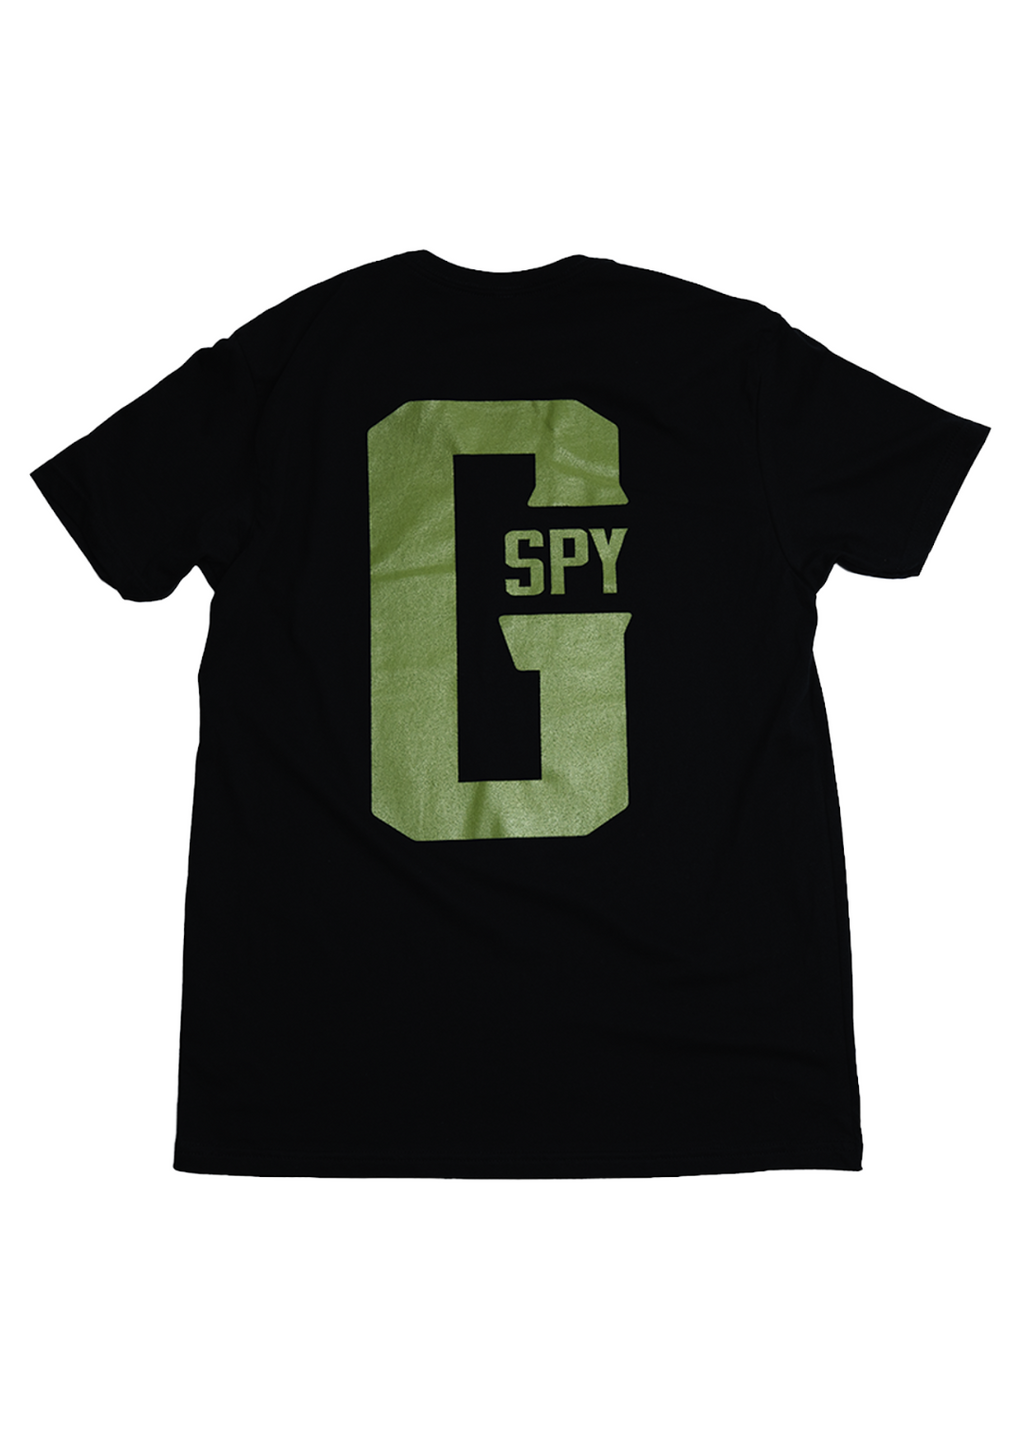 2022 G-Spy黑色/橄榄色t恤